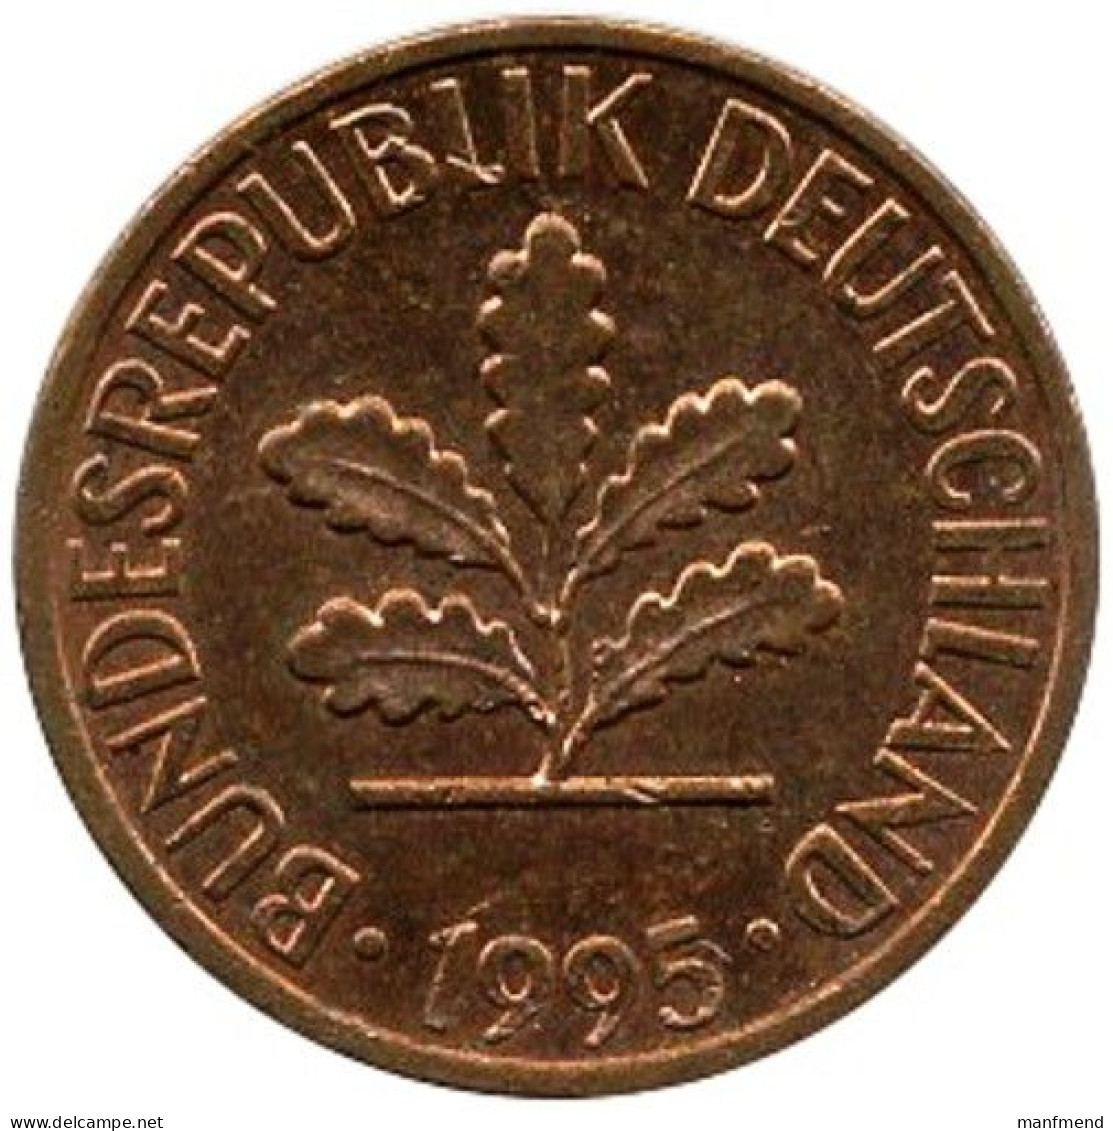 Germany - 1995 - KM 105 - 1 Pfennig - Mintmark "J" / Hamburg - XF - Look Scans - 1 Pfennig